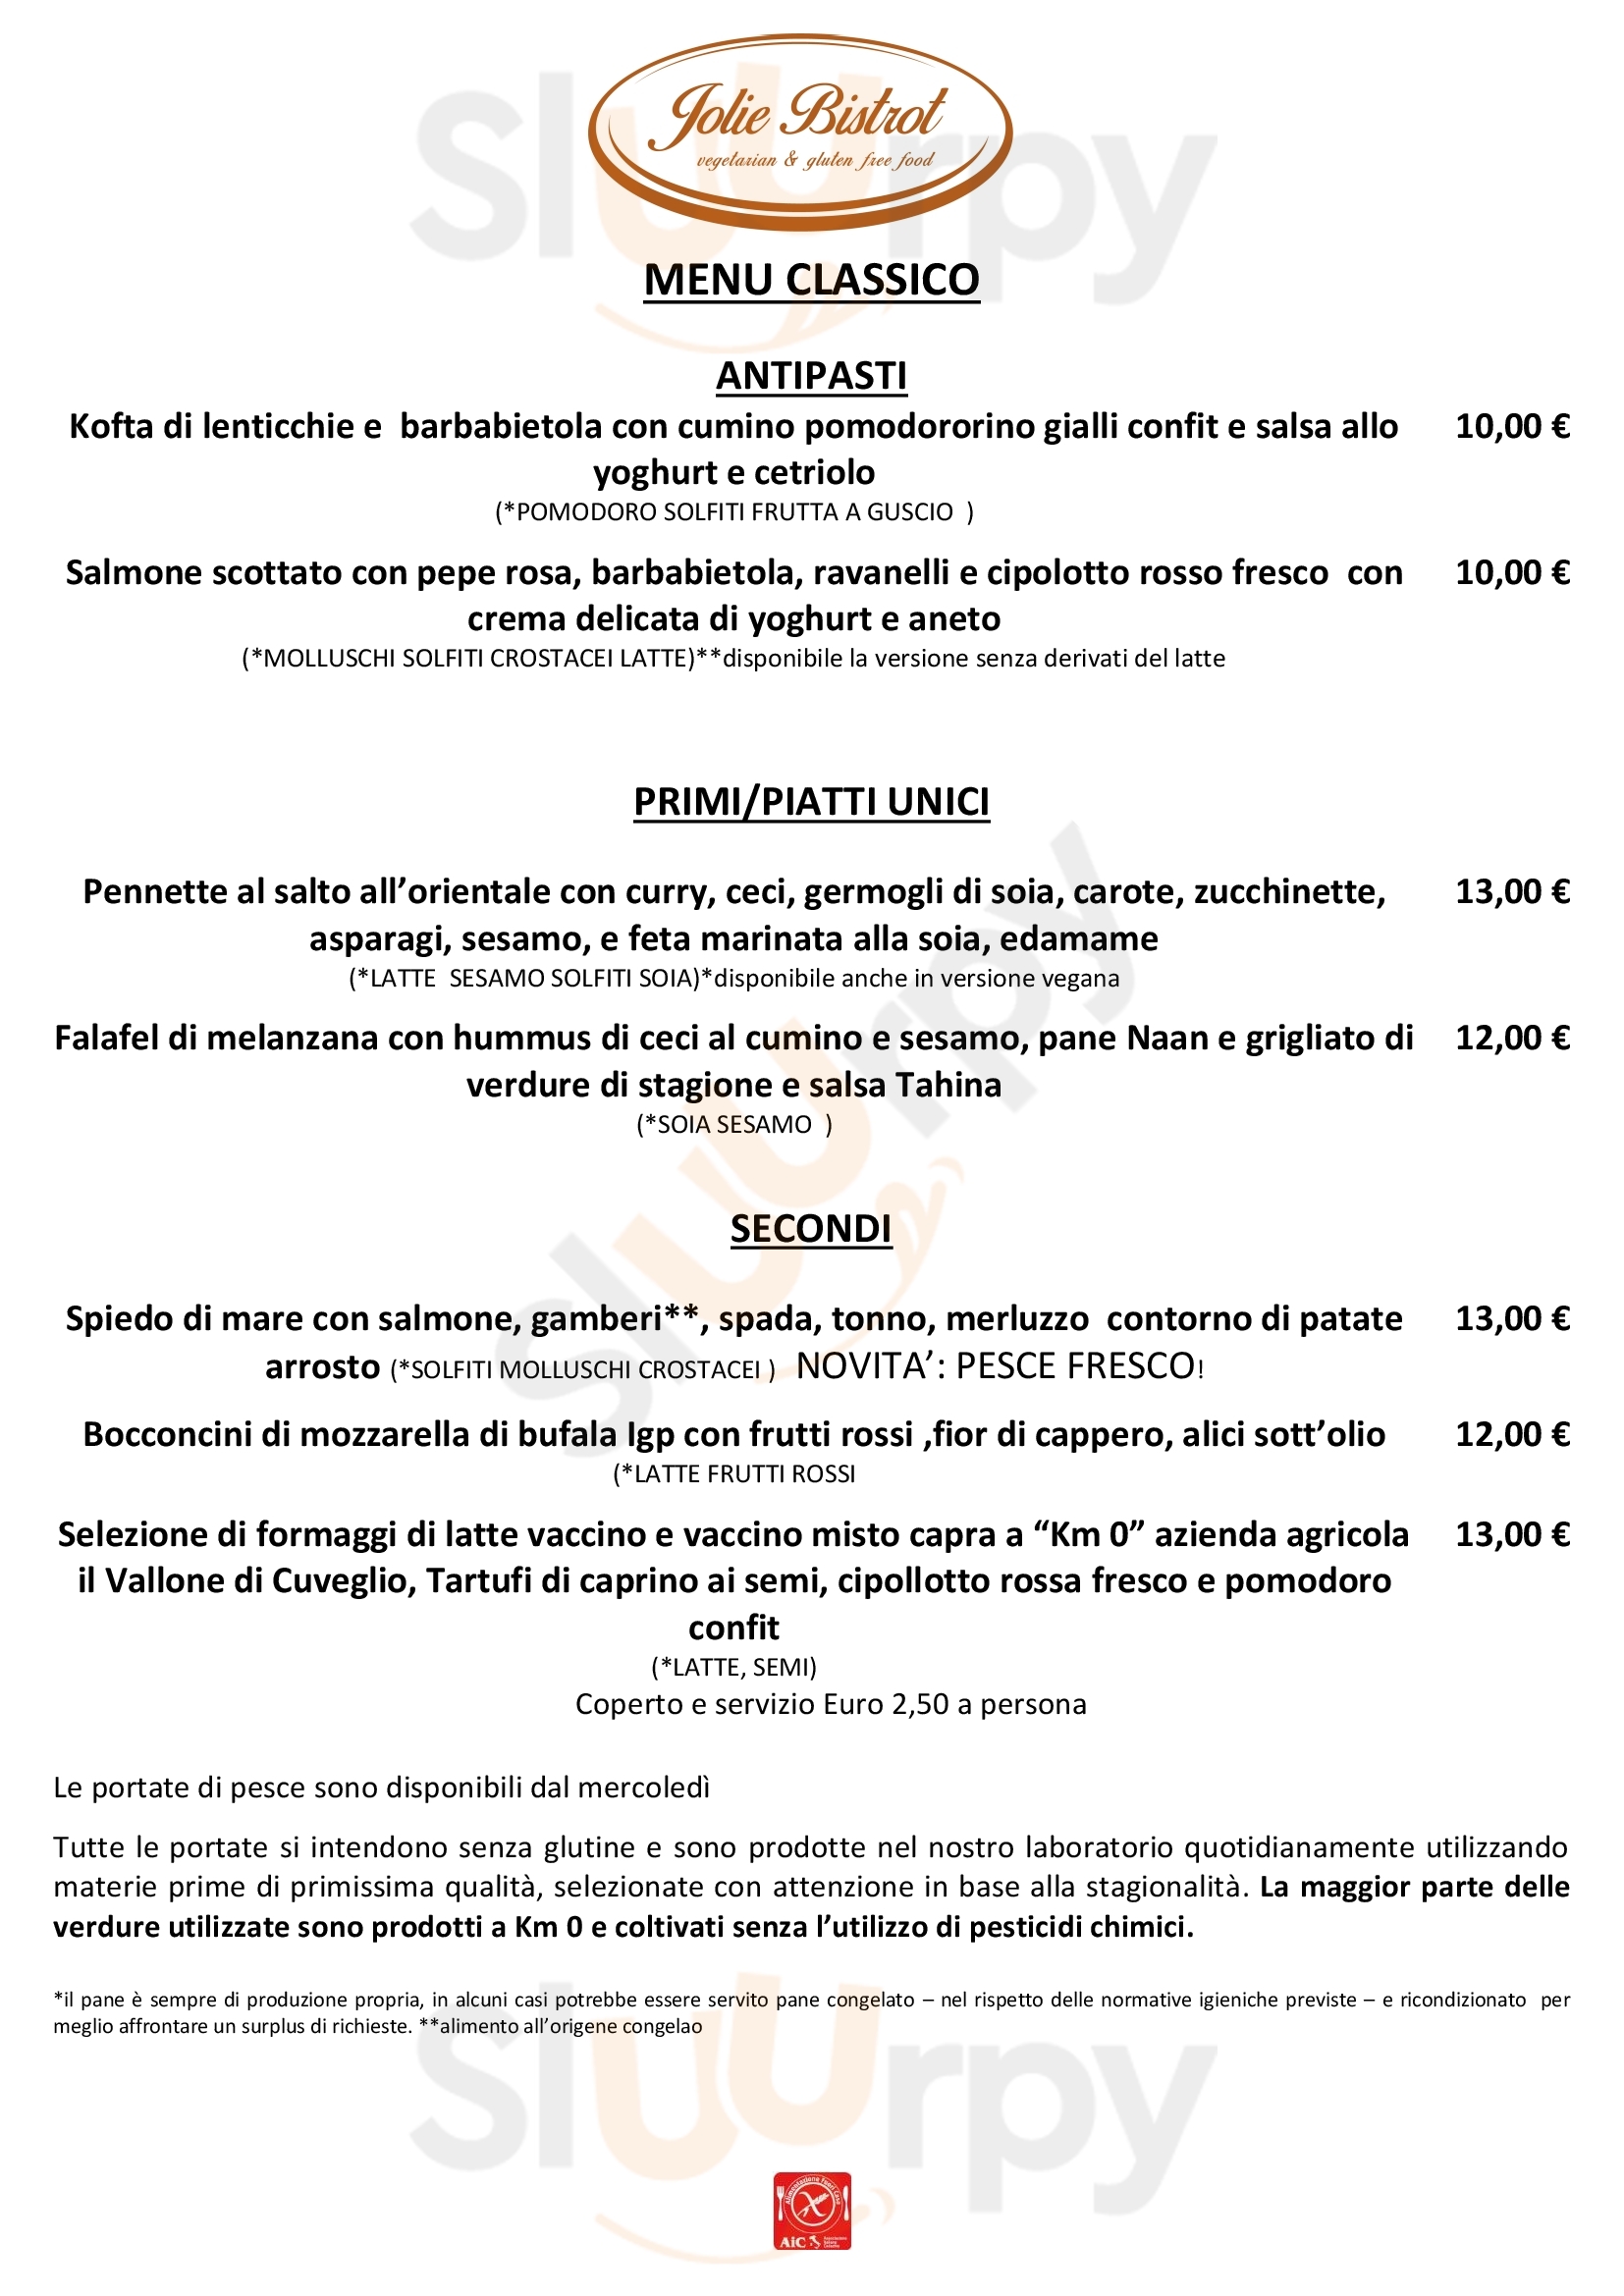 Jolie Bistrot - vegetarian and gluten free Busto Arsizio menù 1 pagina